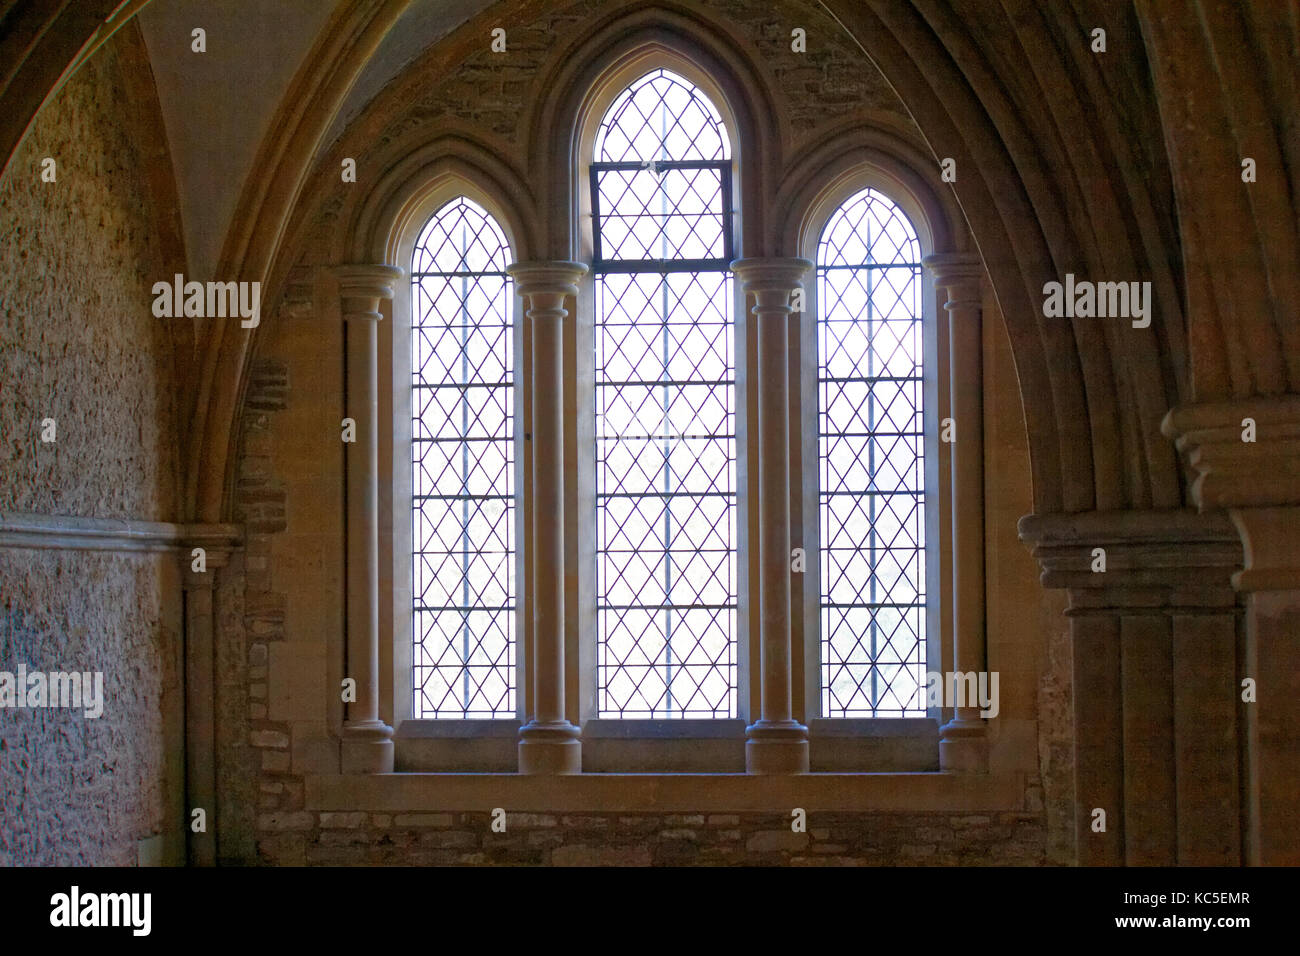 Lacock, Angleterre - le 2 février 2016 : abbaye de Lacock dédiée à St Mary et St Bernard, a été fondée en 1229. Cela a été utilisée dans le film Harry Potter. Banque D'Images